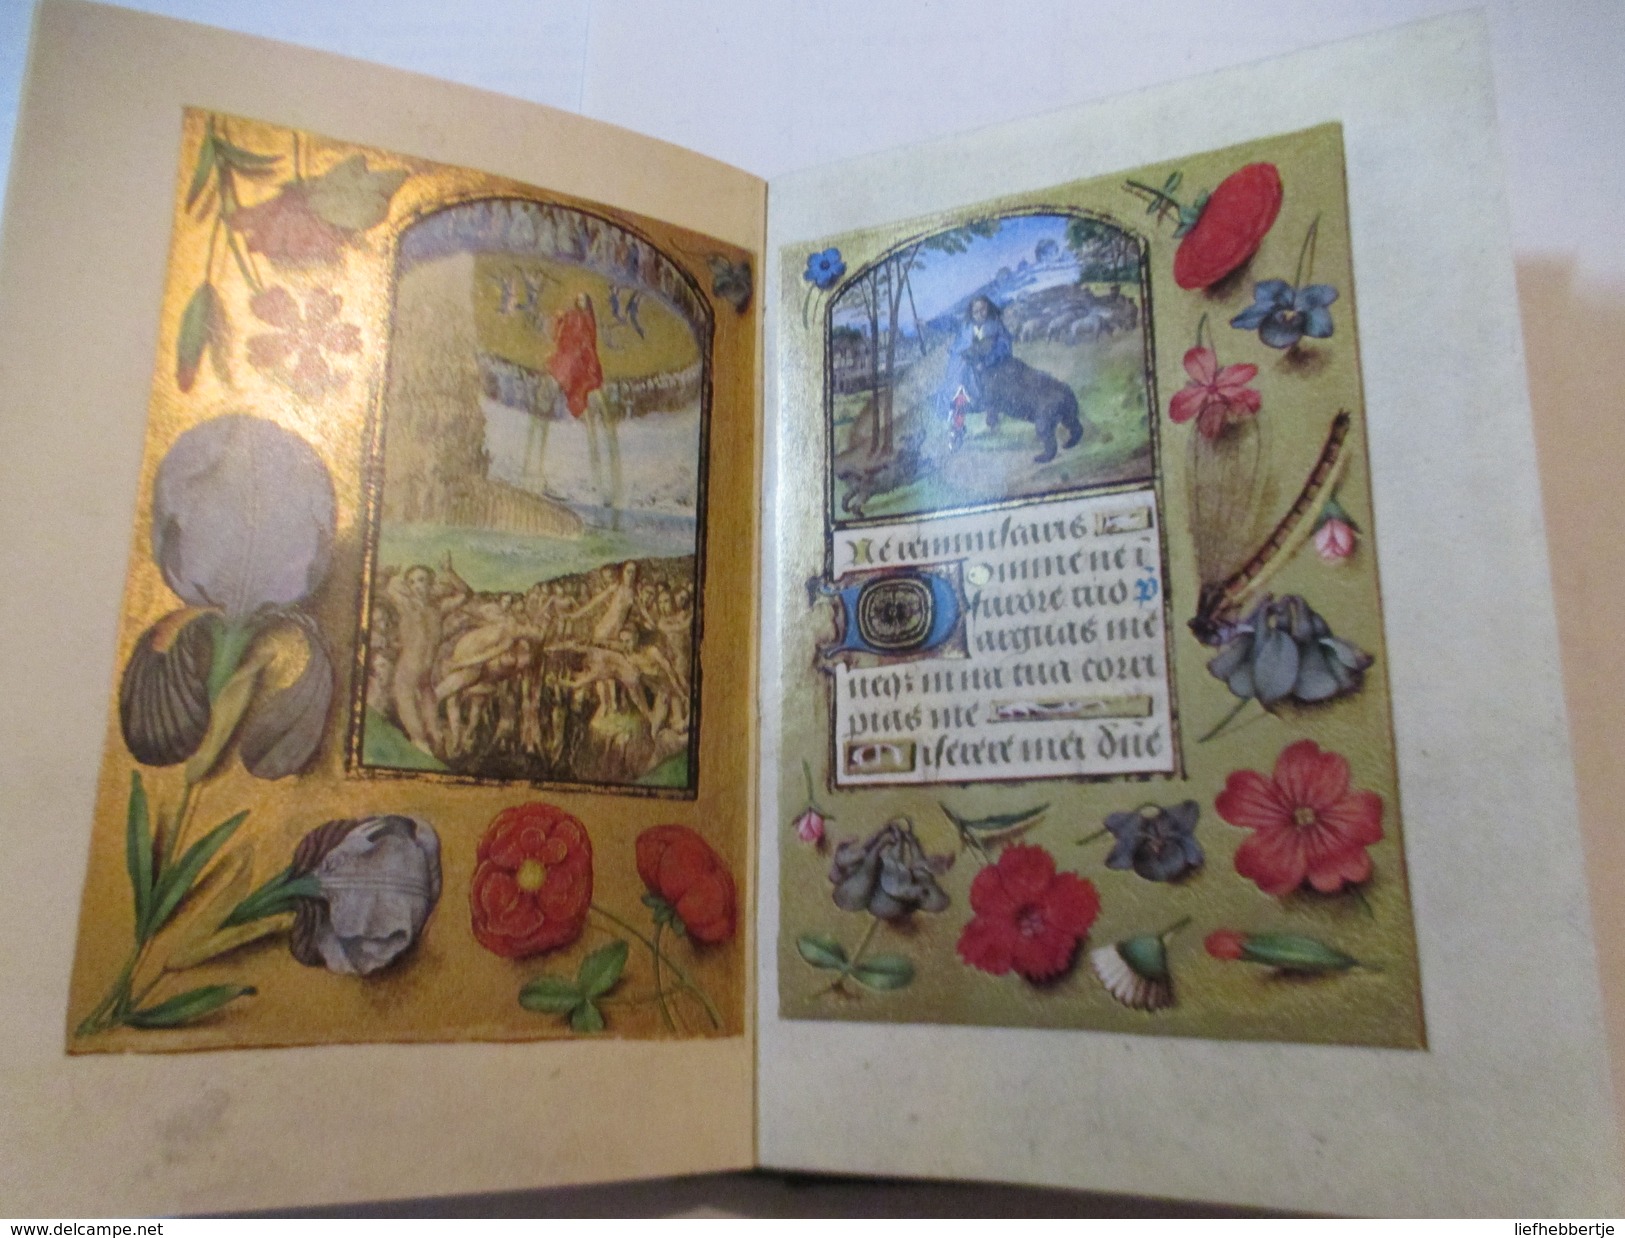 De meester van Maria van Bourgondië.  Een getijdenboek voor Engelbert van Nassau.  -  Brugge - miniaturen - 1971